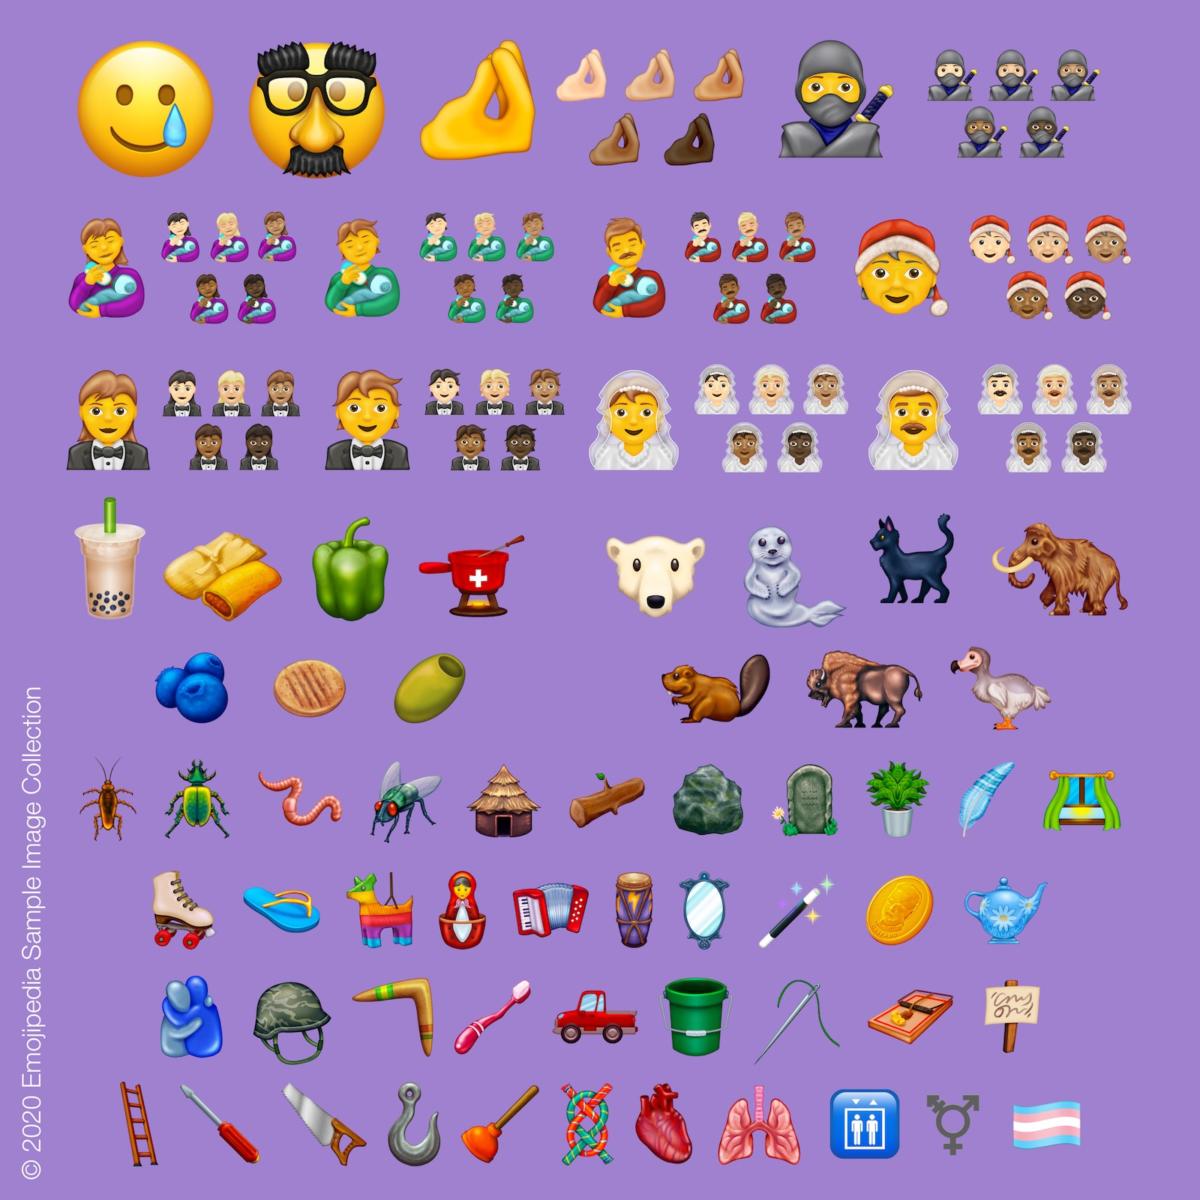 Las aceitunas, el símbolo trans y un abrazo, algunos de los nuevos emojis que podrás usar en WhatsApp